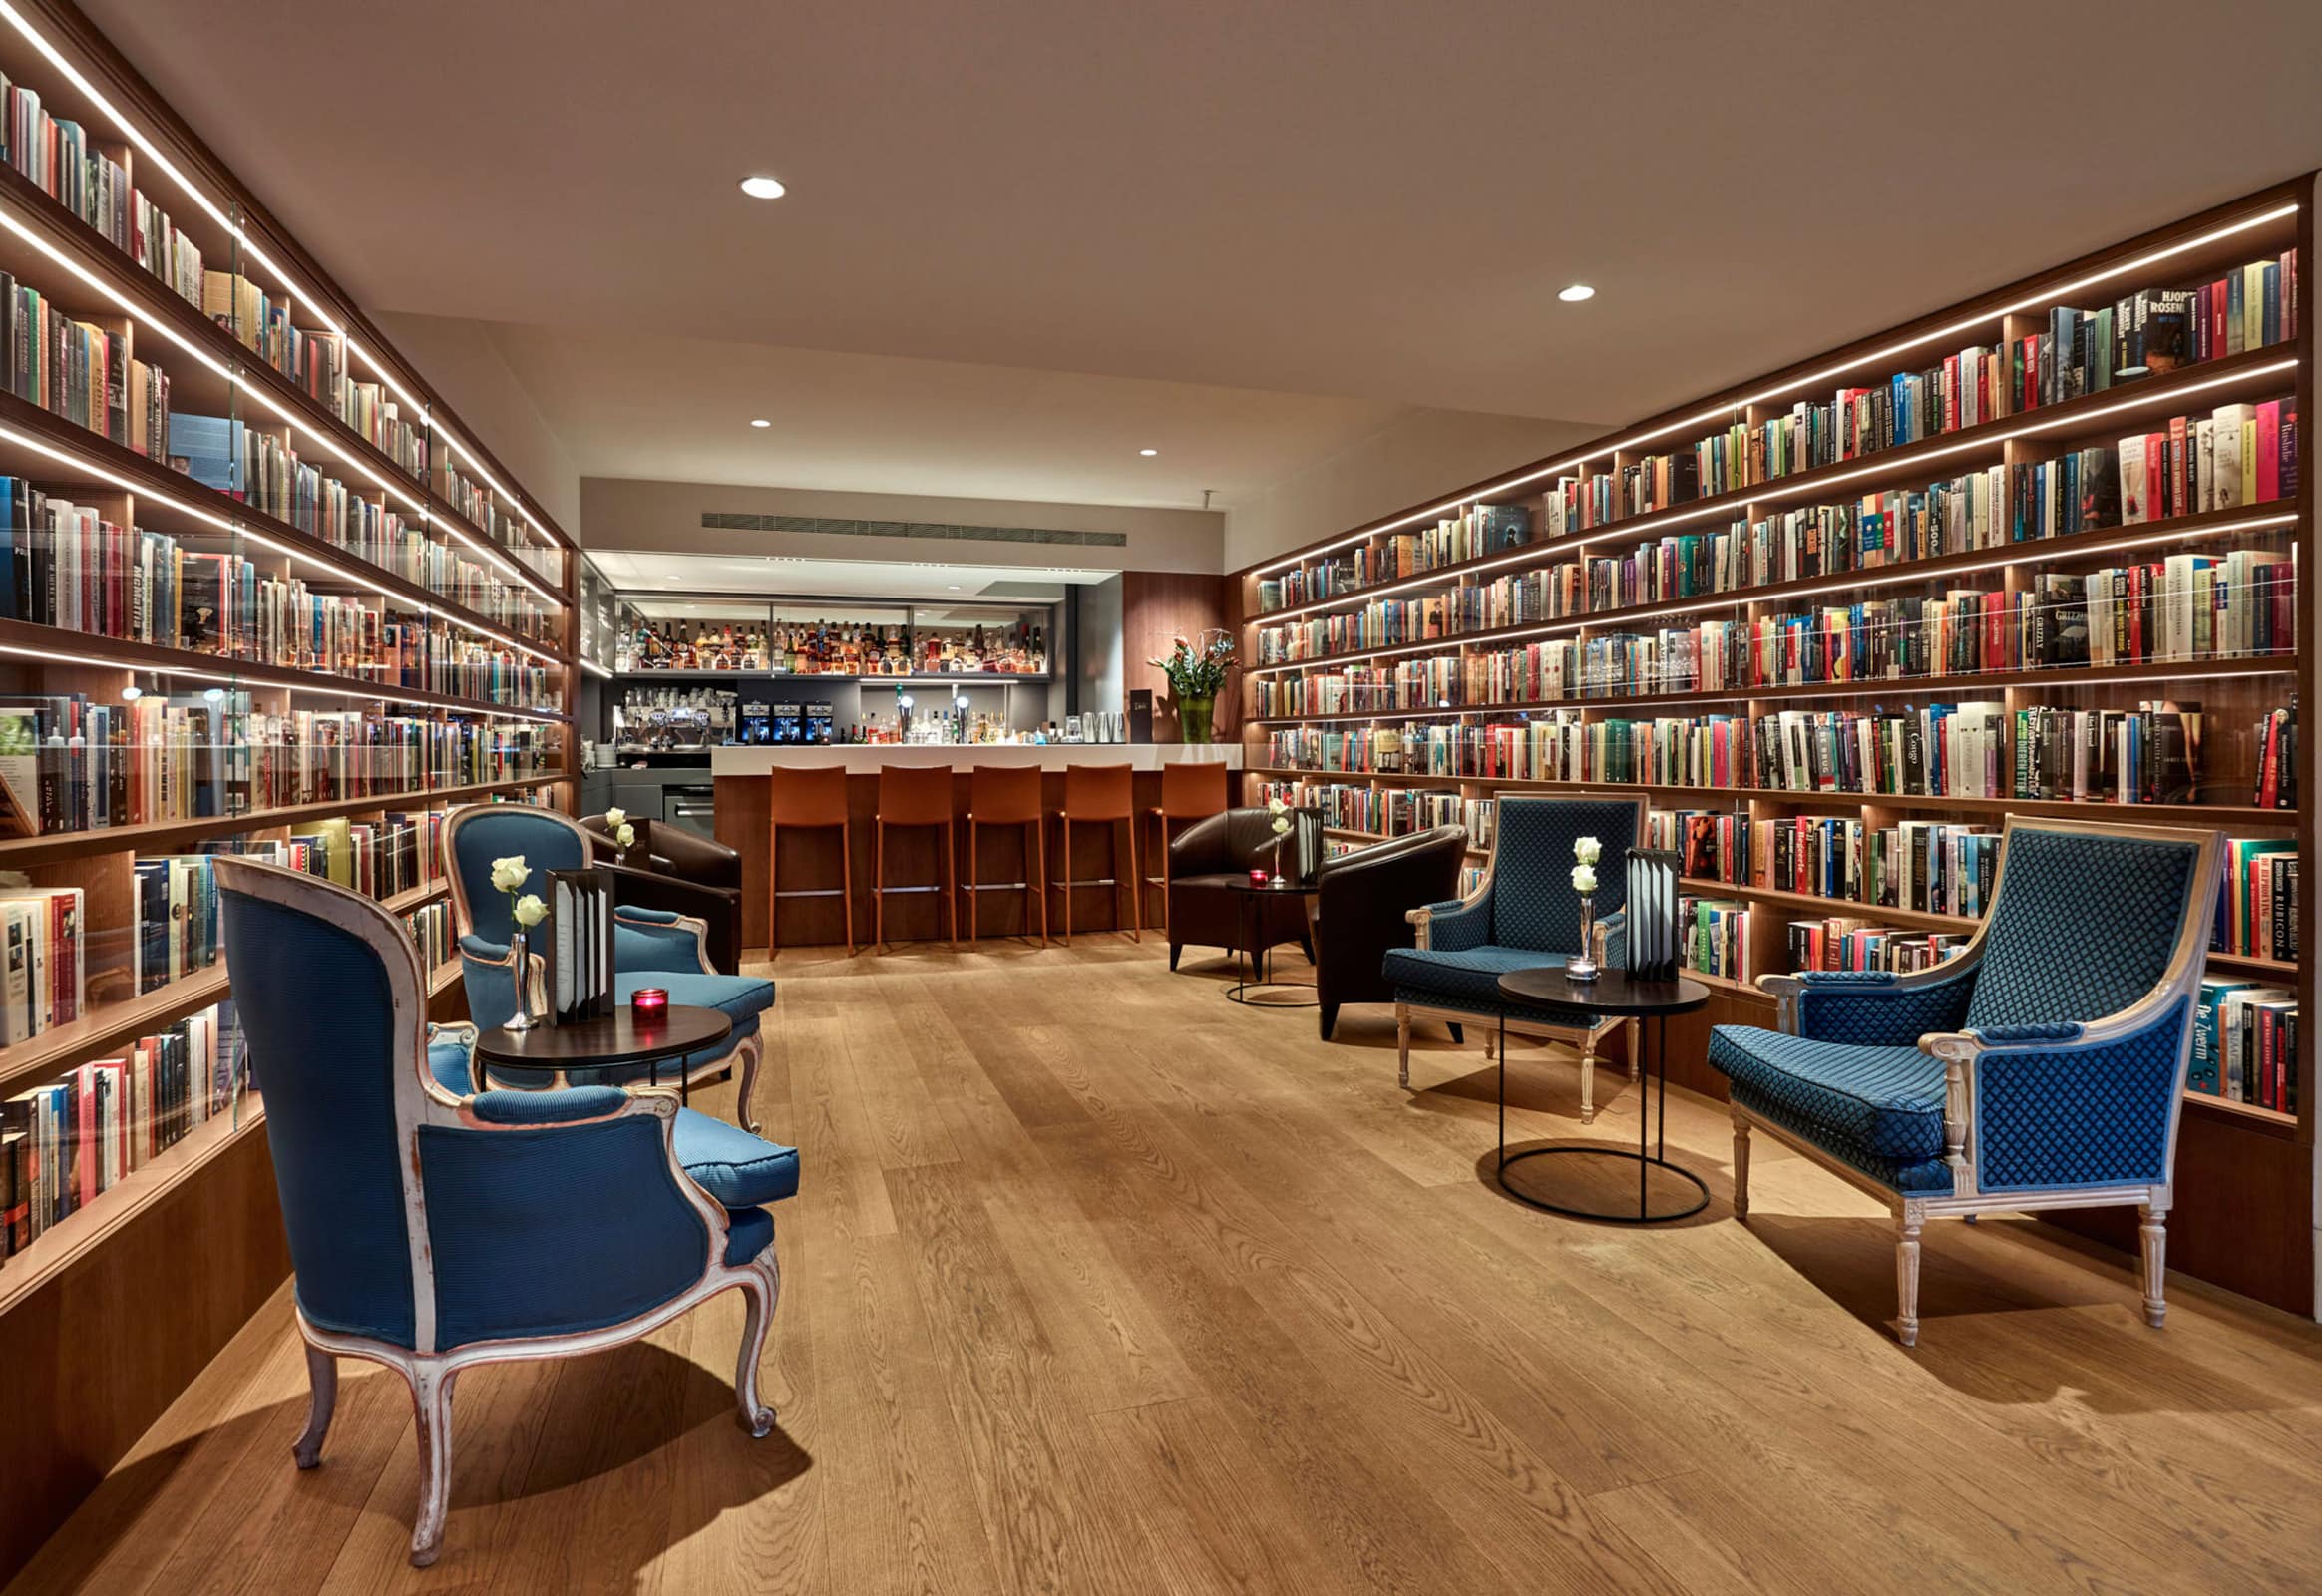 Ld library. Библиотека в гостинице. Отель Library. Библиотека интерьер отель. Библиотека в Нью-Йорке.